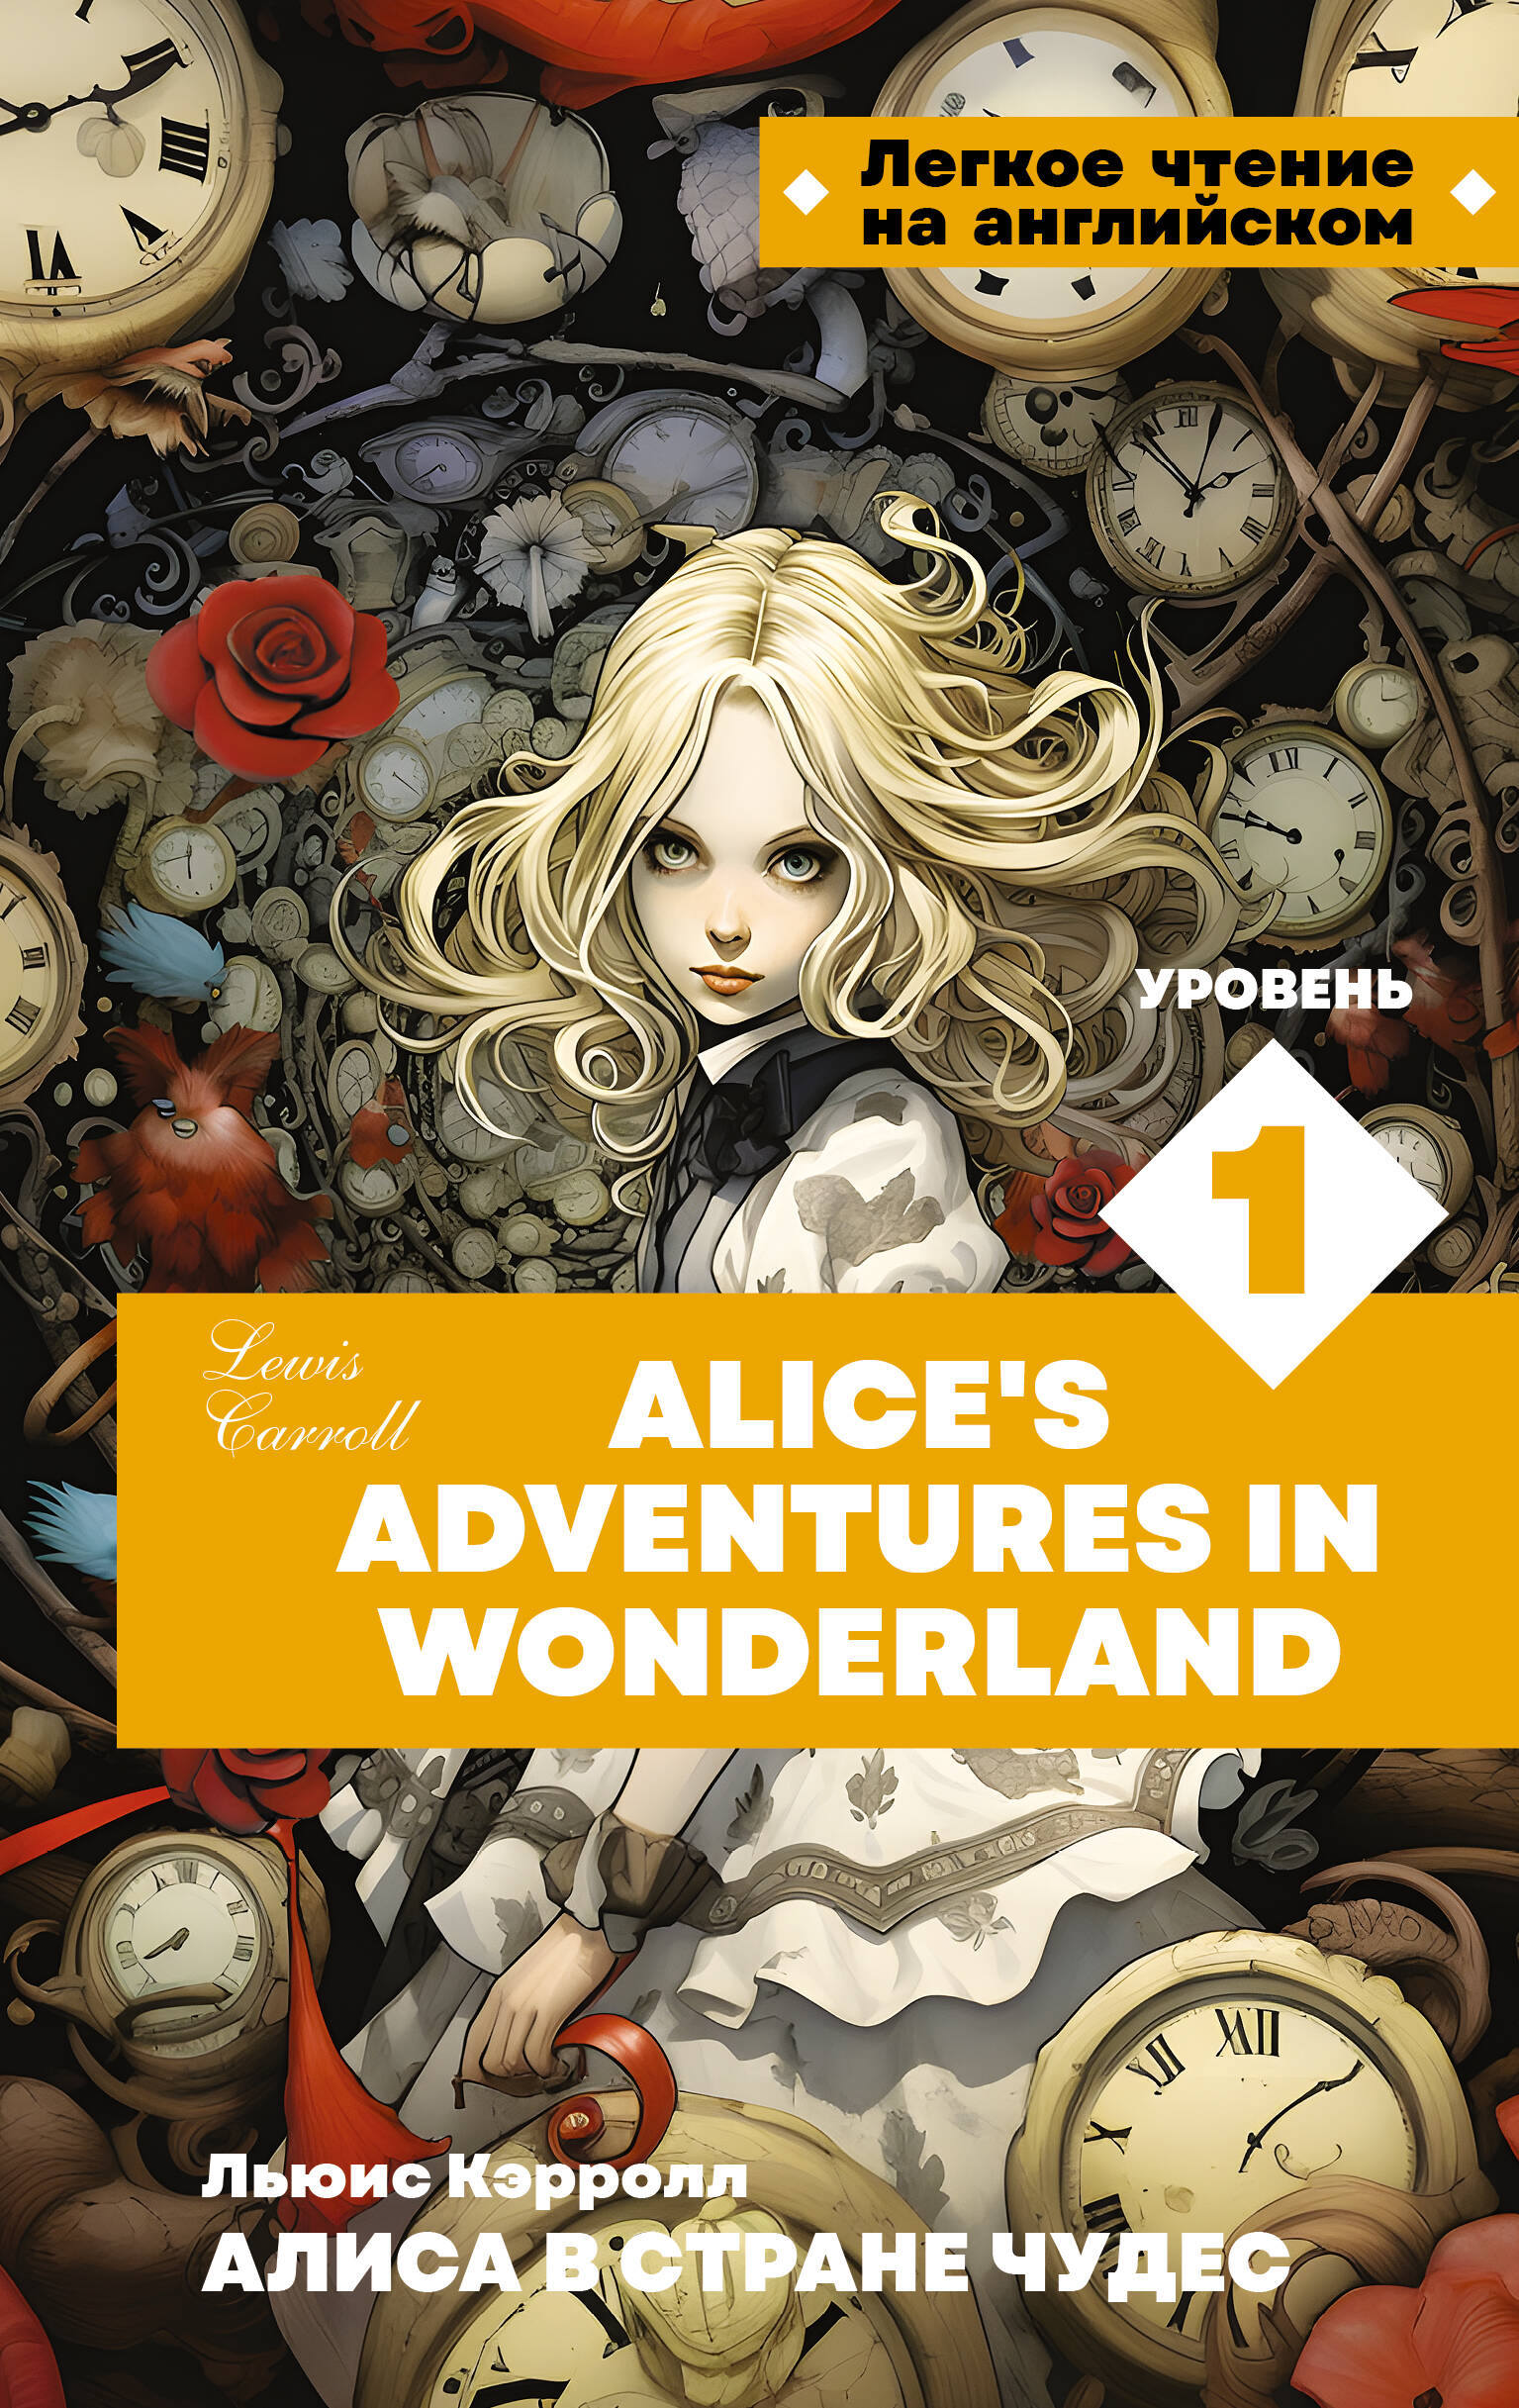 Кэрролл Льюис Алиса в стране чудес. Уровень 1 = Alice’s Adventures in Wonderland кэрролл льюис набор алиса в стране чудес алиса в зазеркалье ил л марайя льюис кэрролл закладка harry potter распределяющая шляпа магнитная